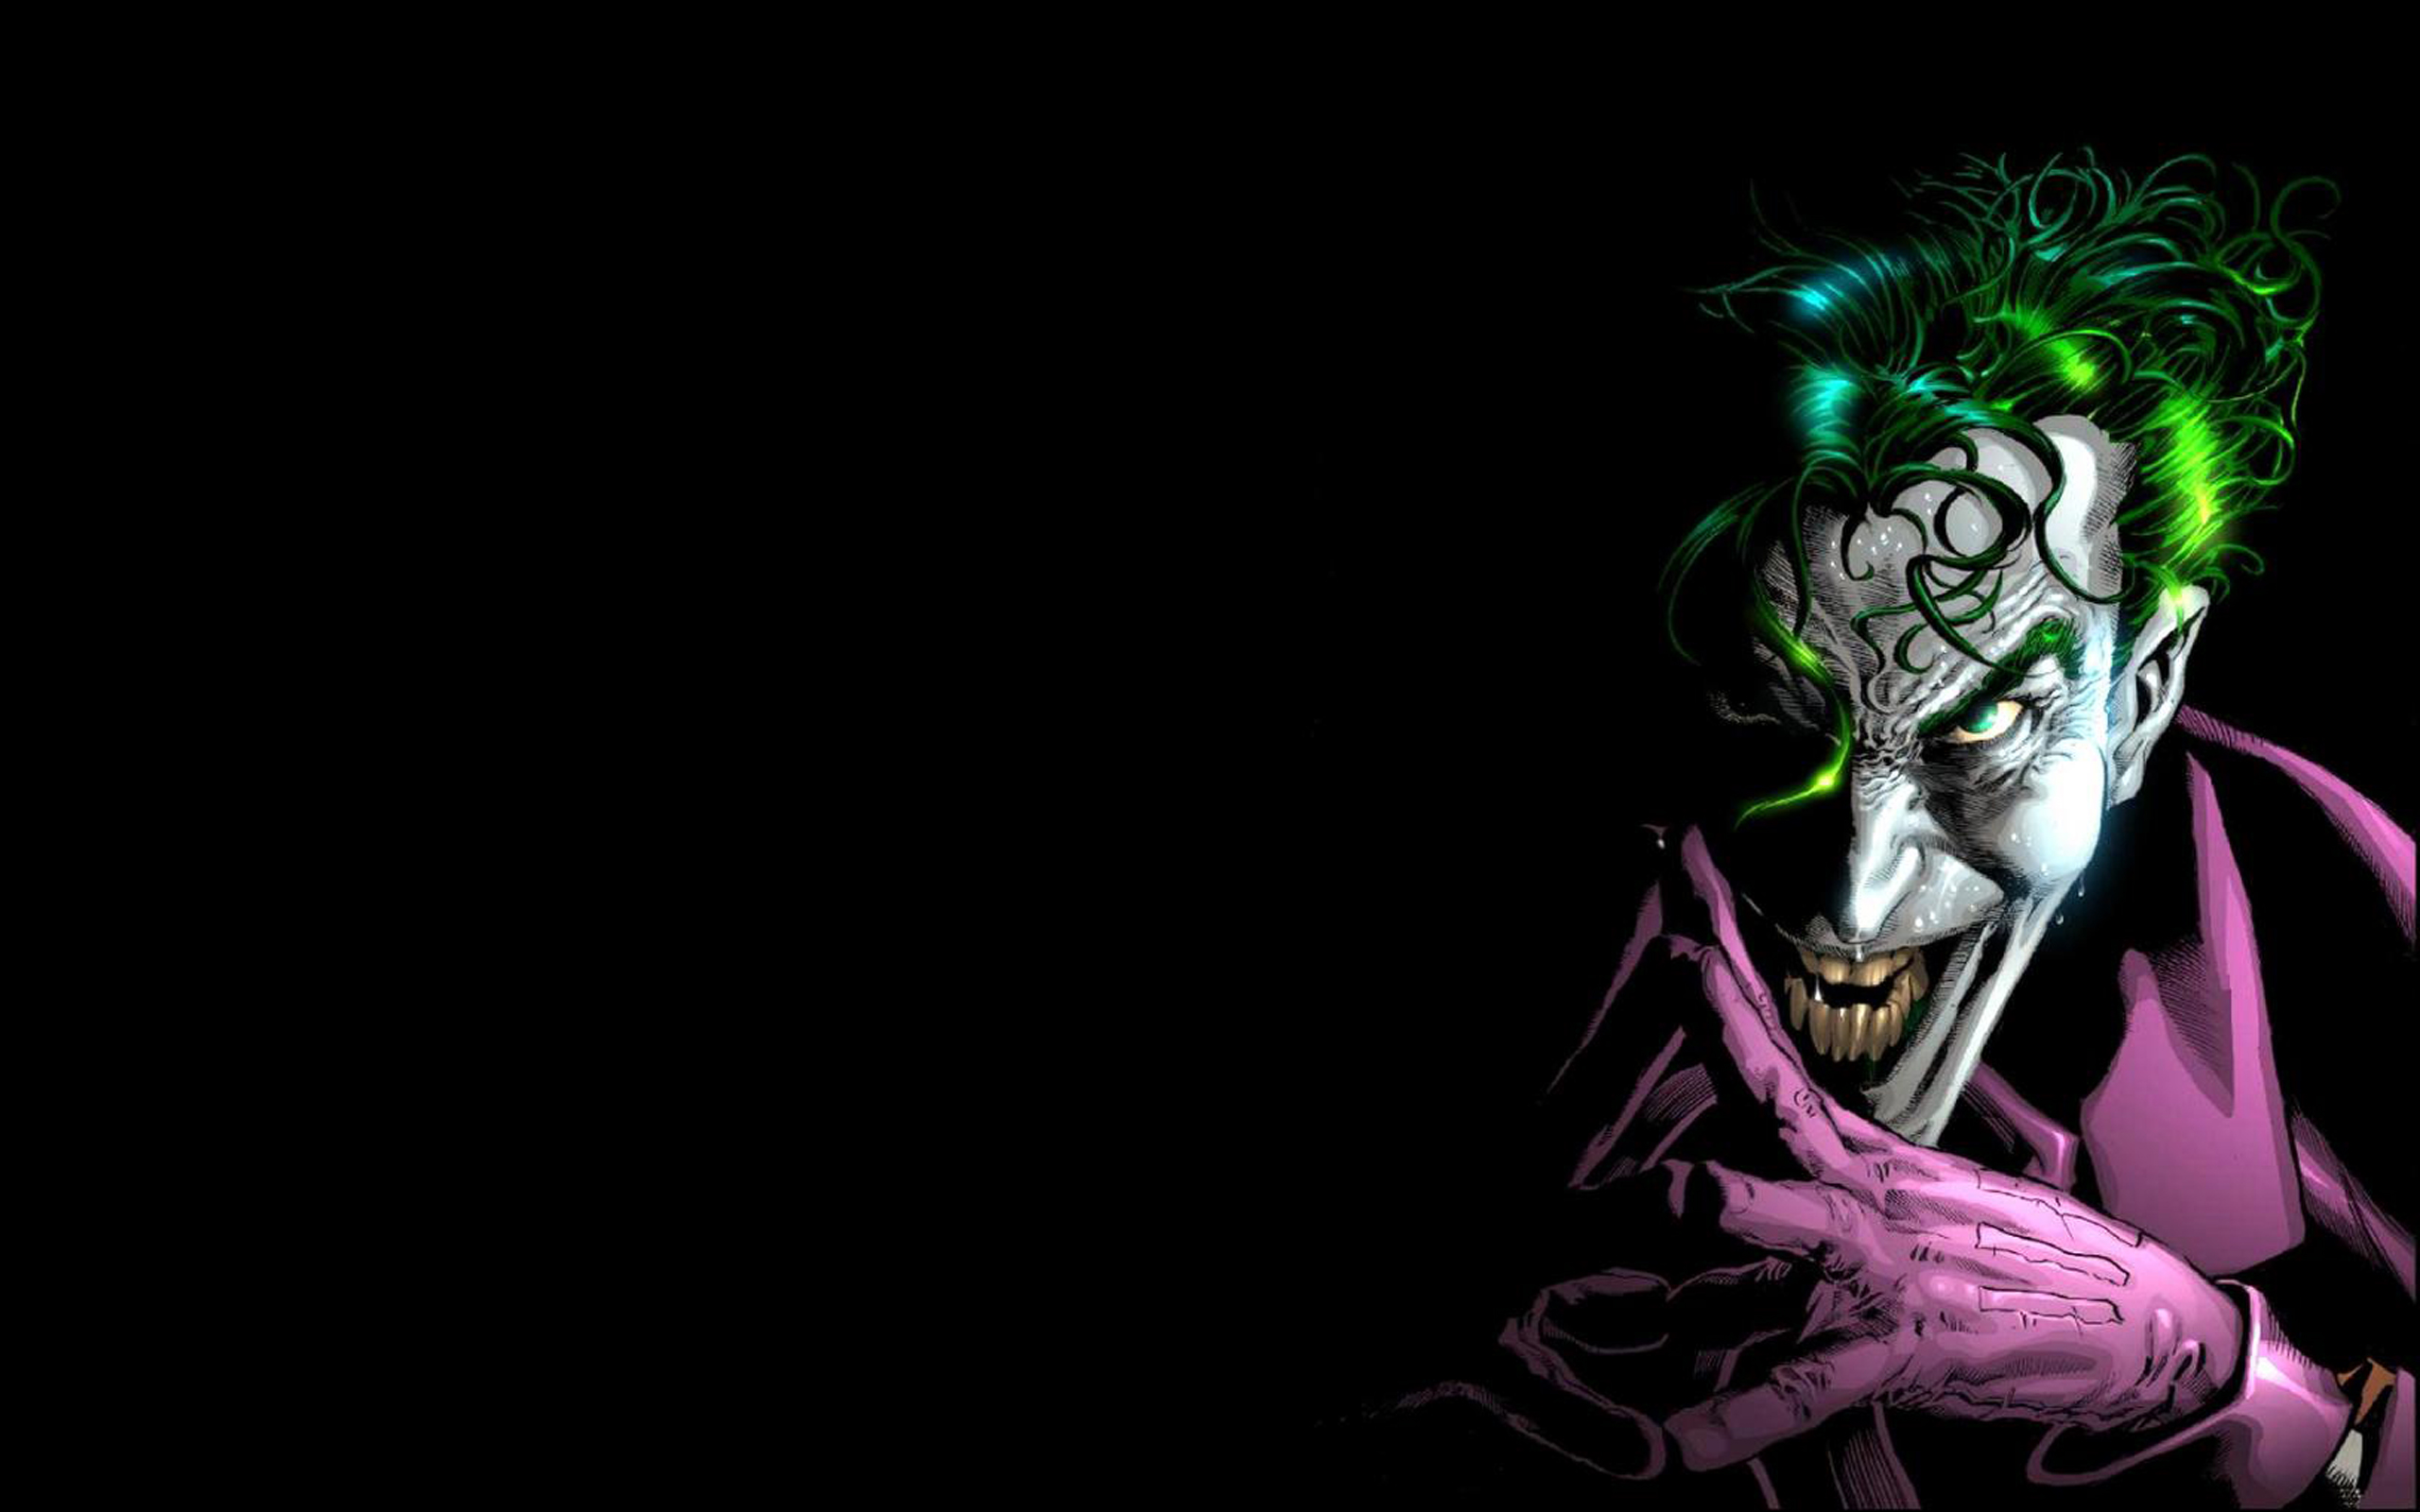 Joker Wallpaper For Pc 2560x1600 : 